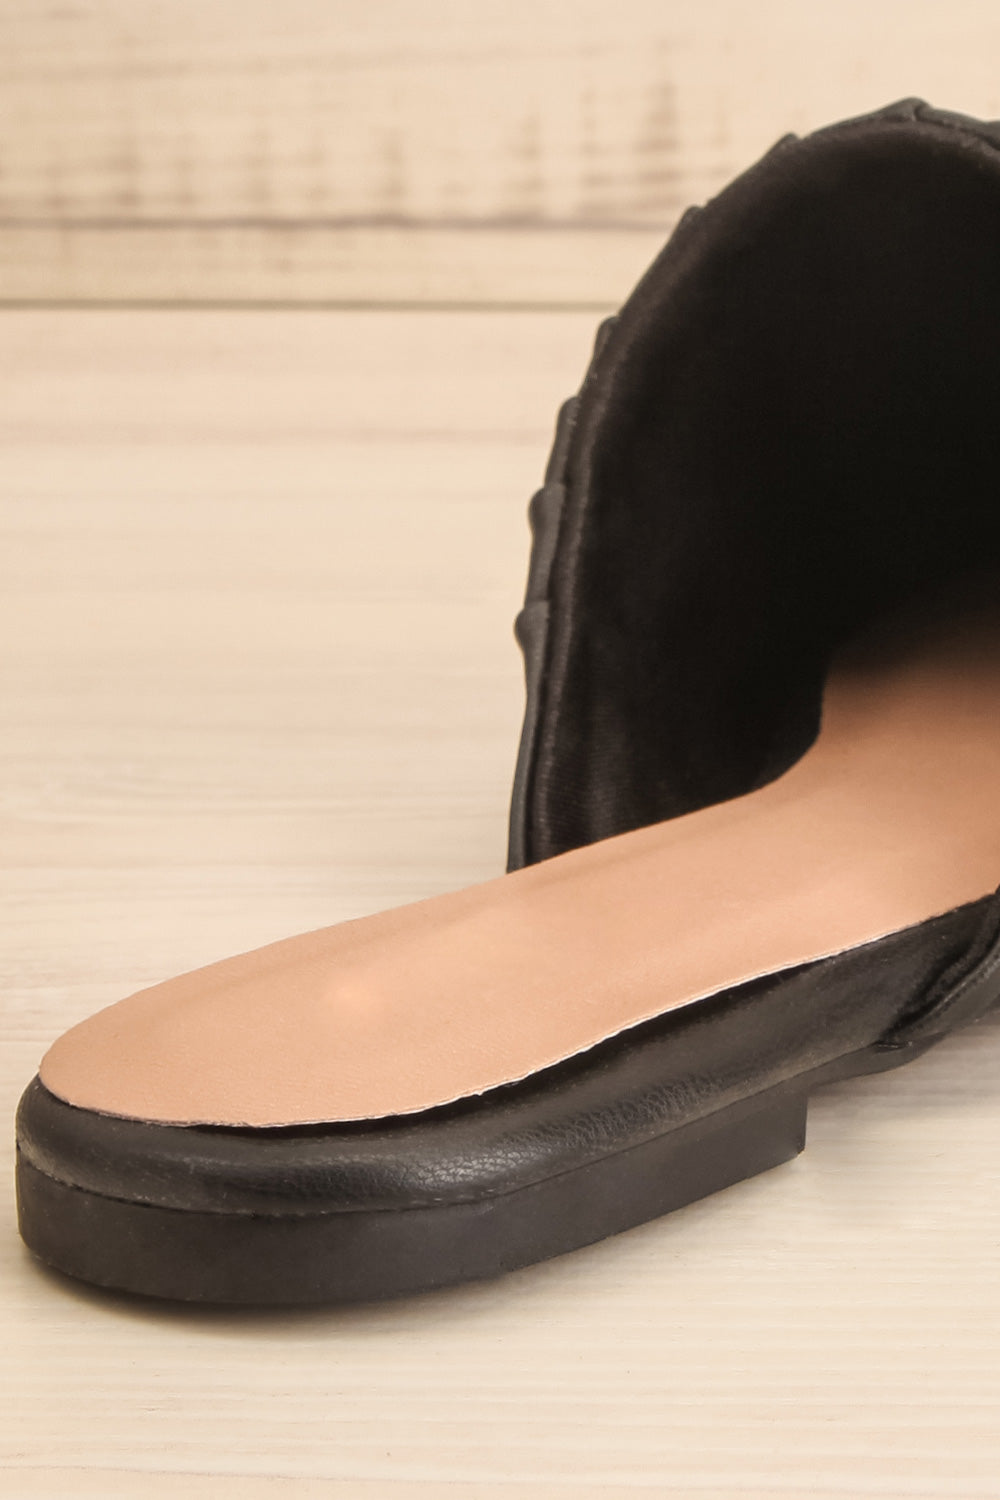 Vancouver Black Faux-Leather Pointed Toe Mules | La petite garçonne back close-up